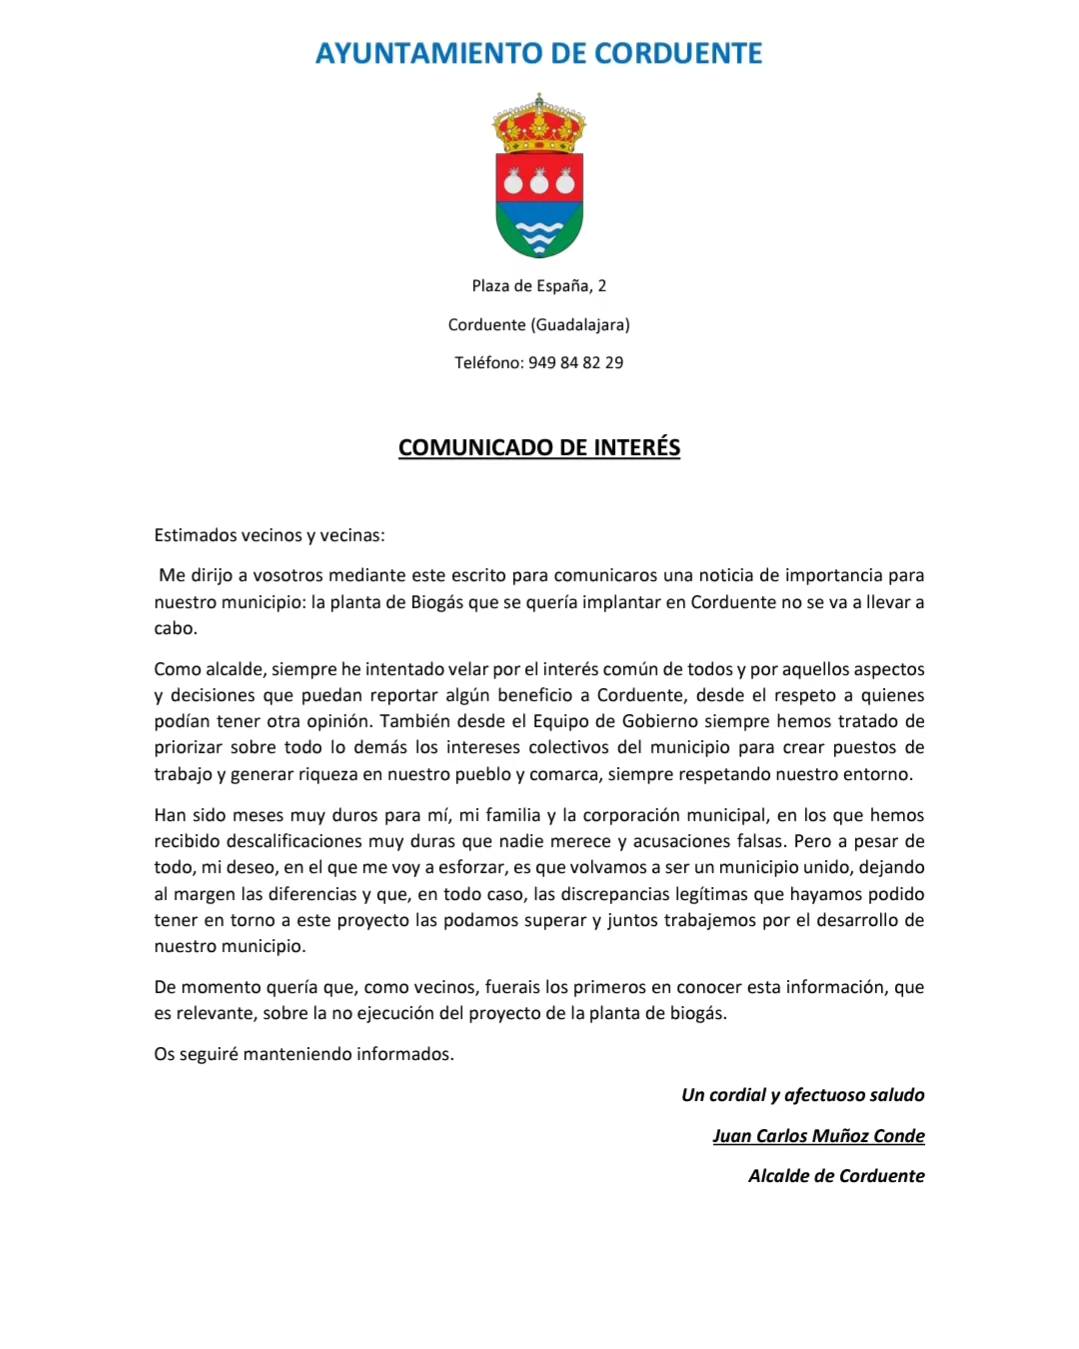 Cancelada la Planta de Biogás en Corduente